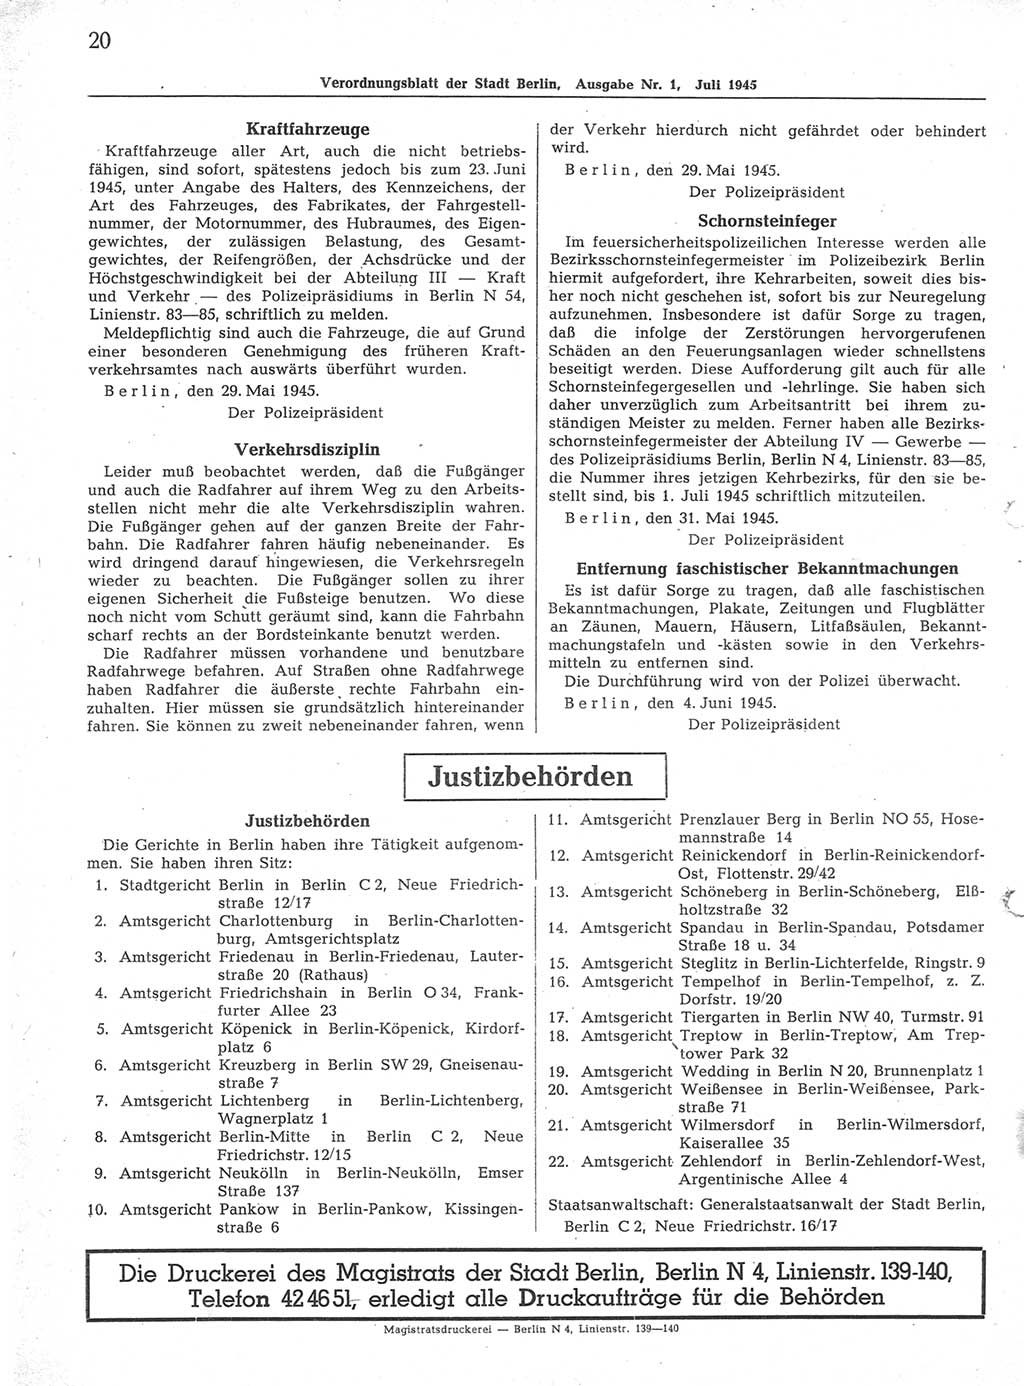 Verordnungsblatt (VOBl.) der Stadt Berlin 1945, Seite 20 (VOBl. Bln. 1945, S. 20)